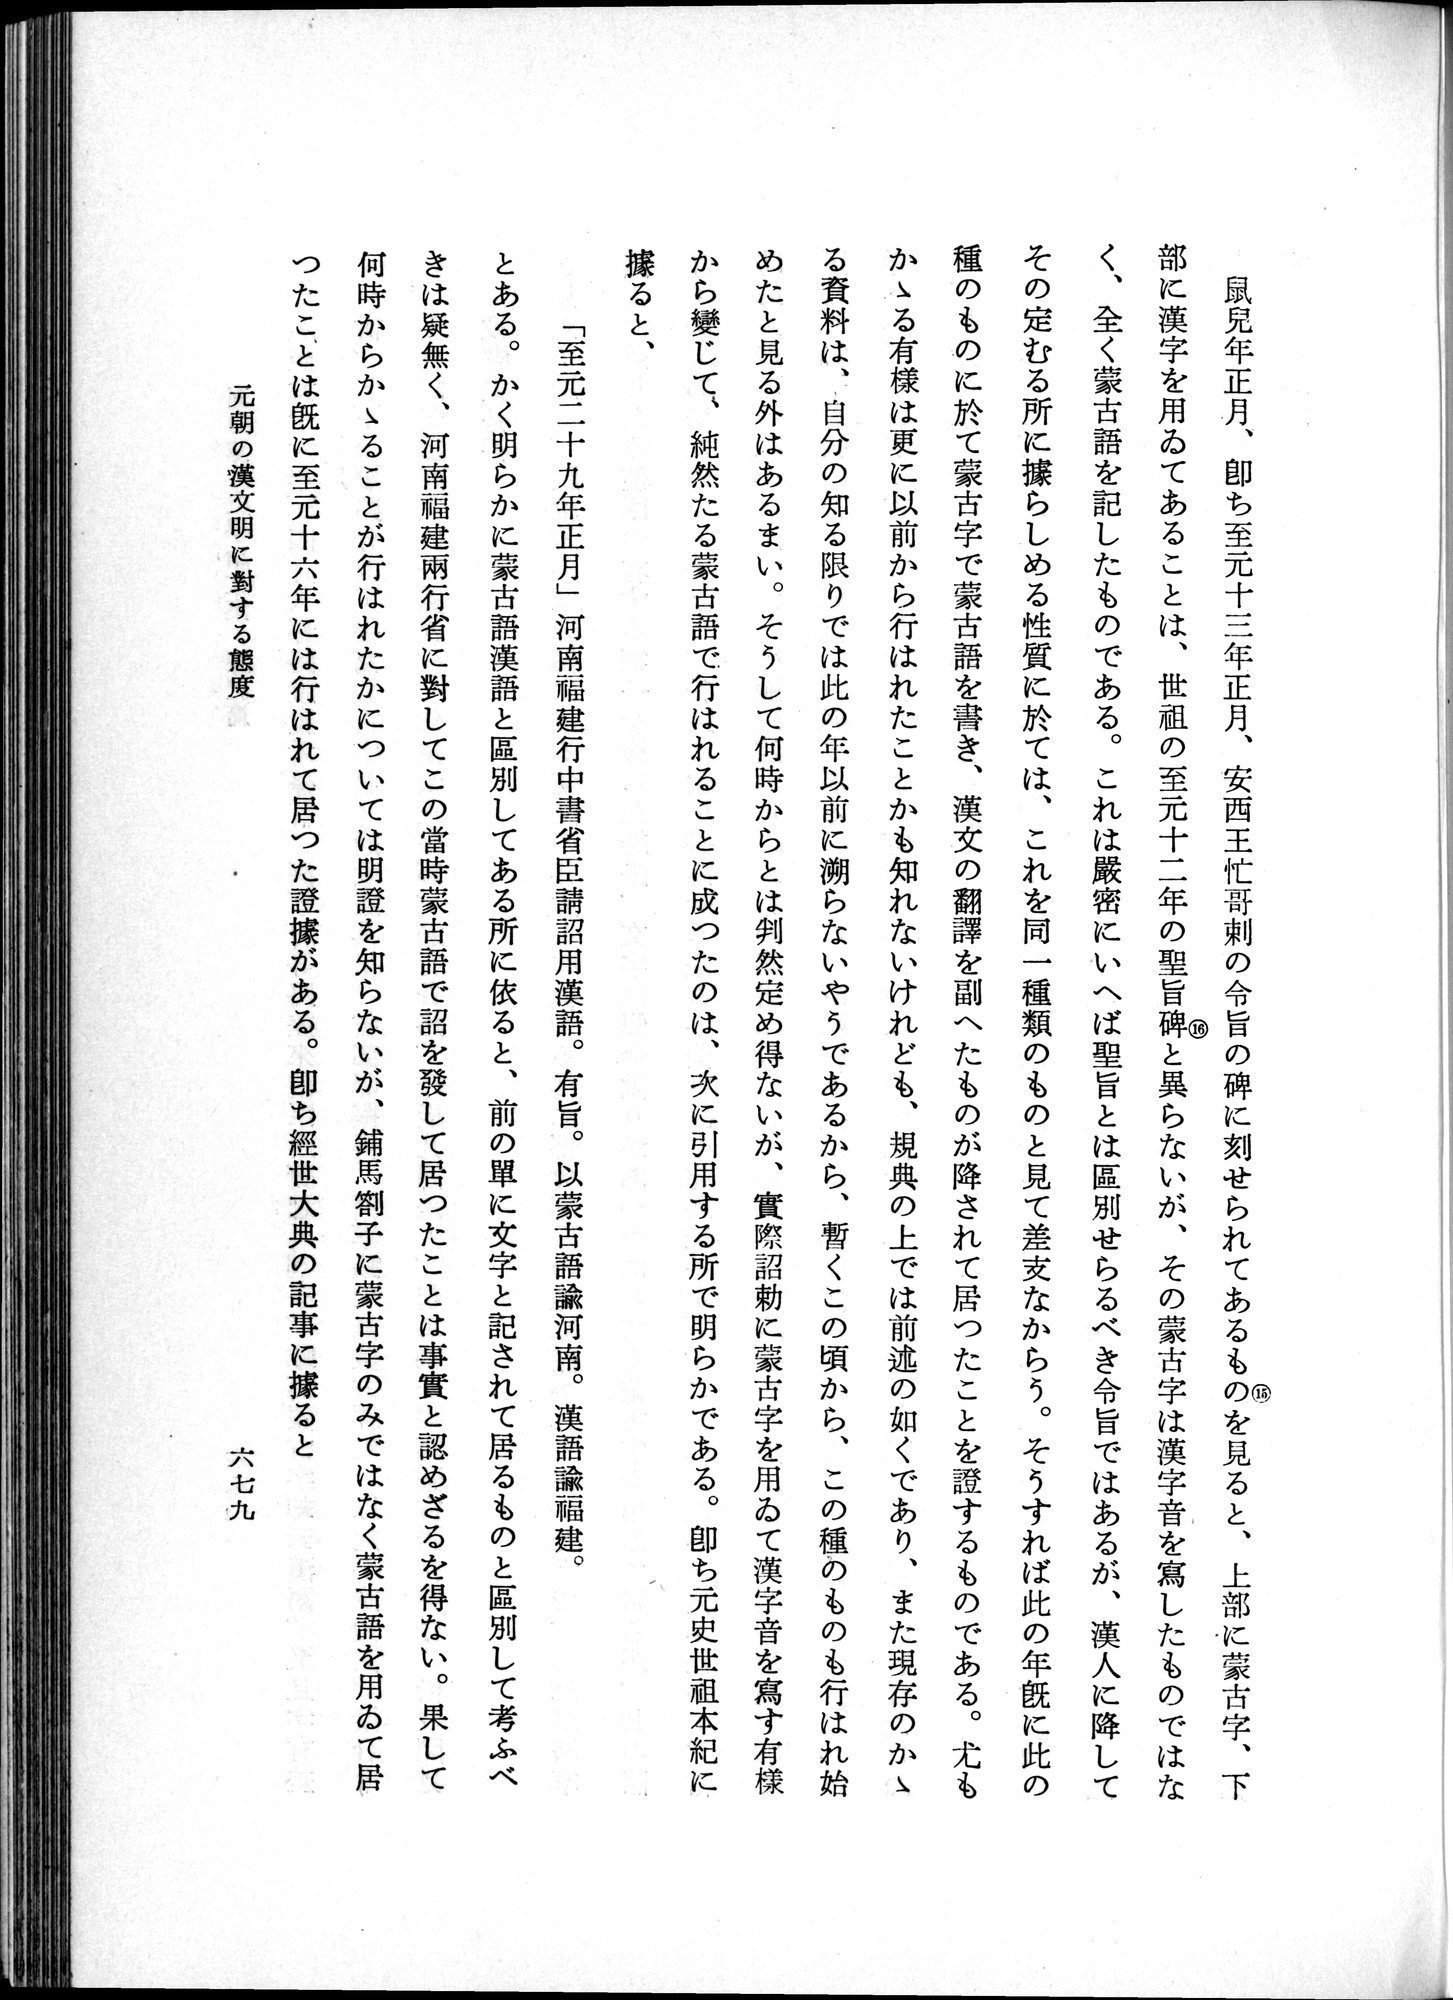 羽田博士史学論文集 : vol.1 / Page 717 (Grayscale High Resolution Image)